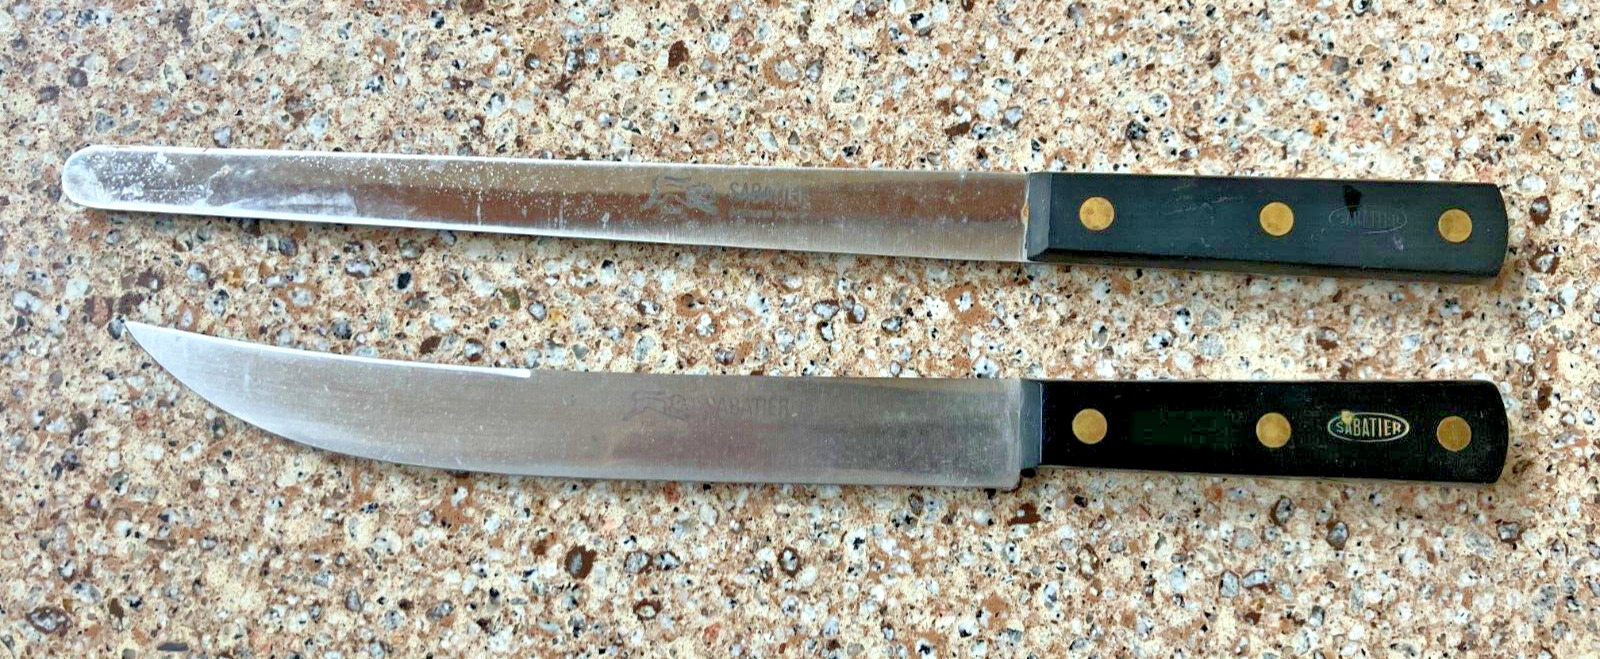 LOT OF 2 VINTAGE SABATIER CARVING/SLICING KITCHEN CHEF KNIVES KNIFE